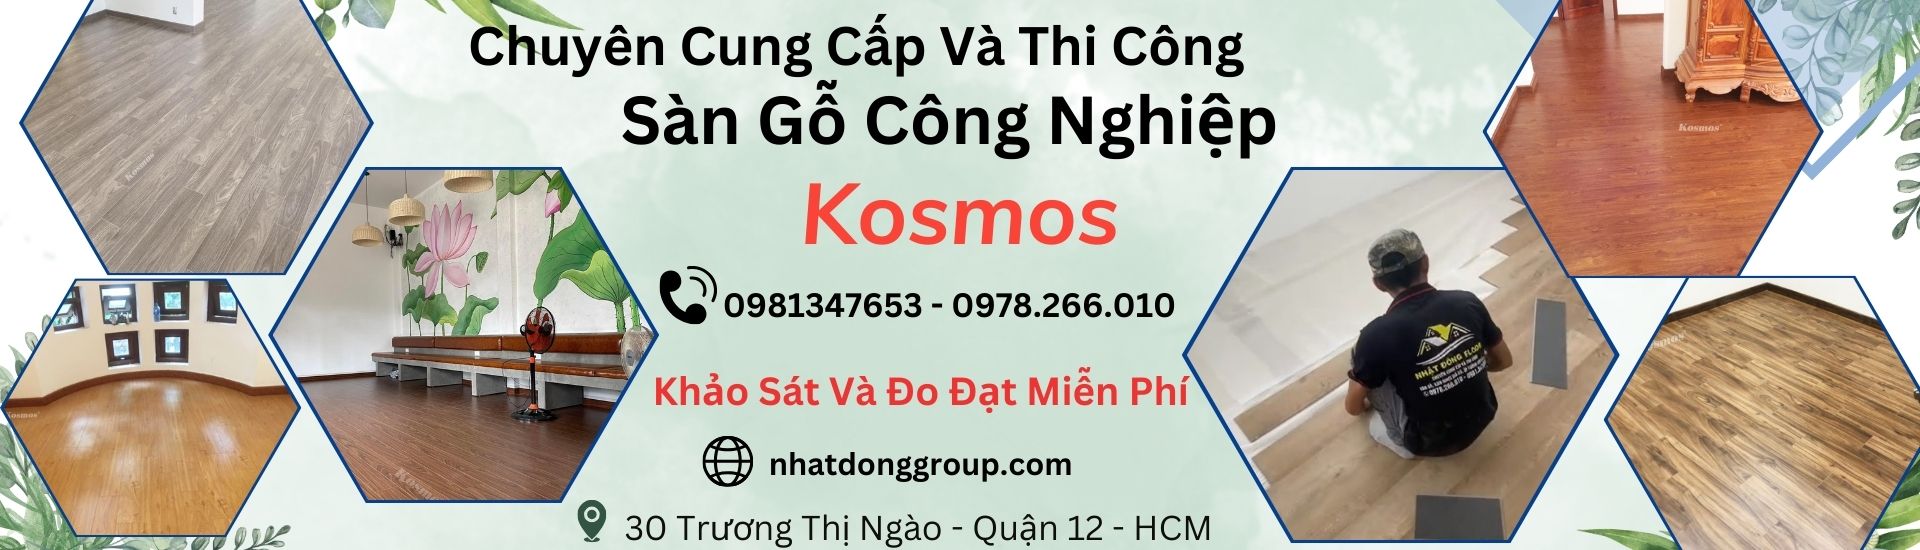 Sàn Gỗ Công Nghiệp Kosmos Tại Hồ Chí Minh,Long An , Bình Dương, Đồng Nai